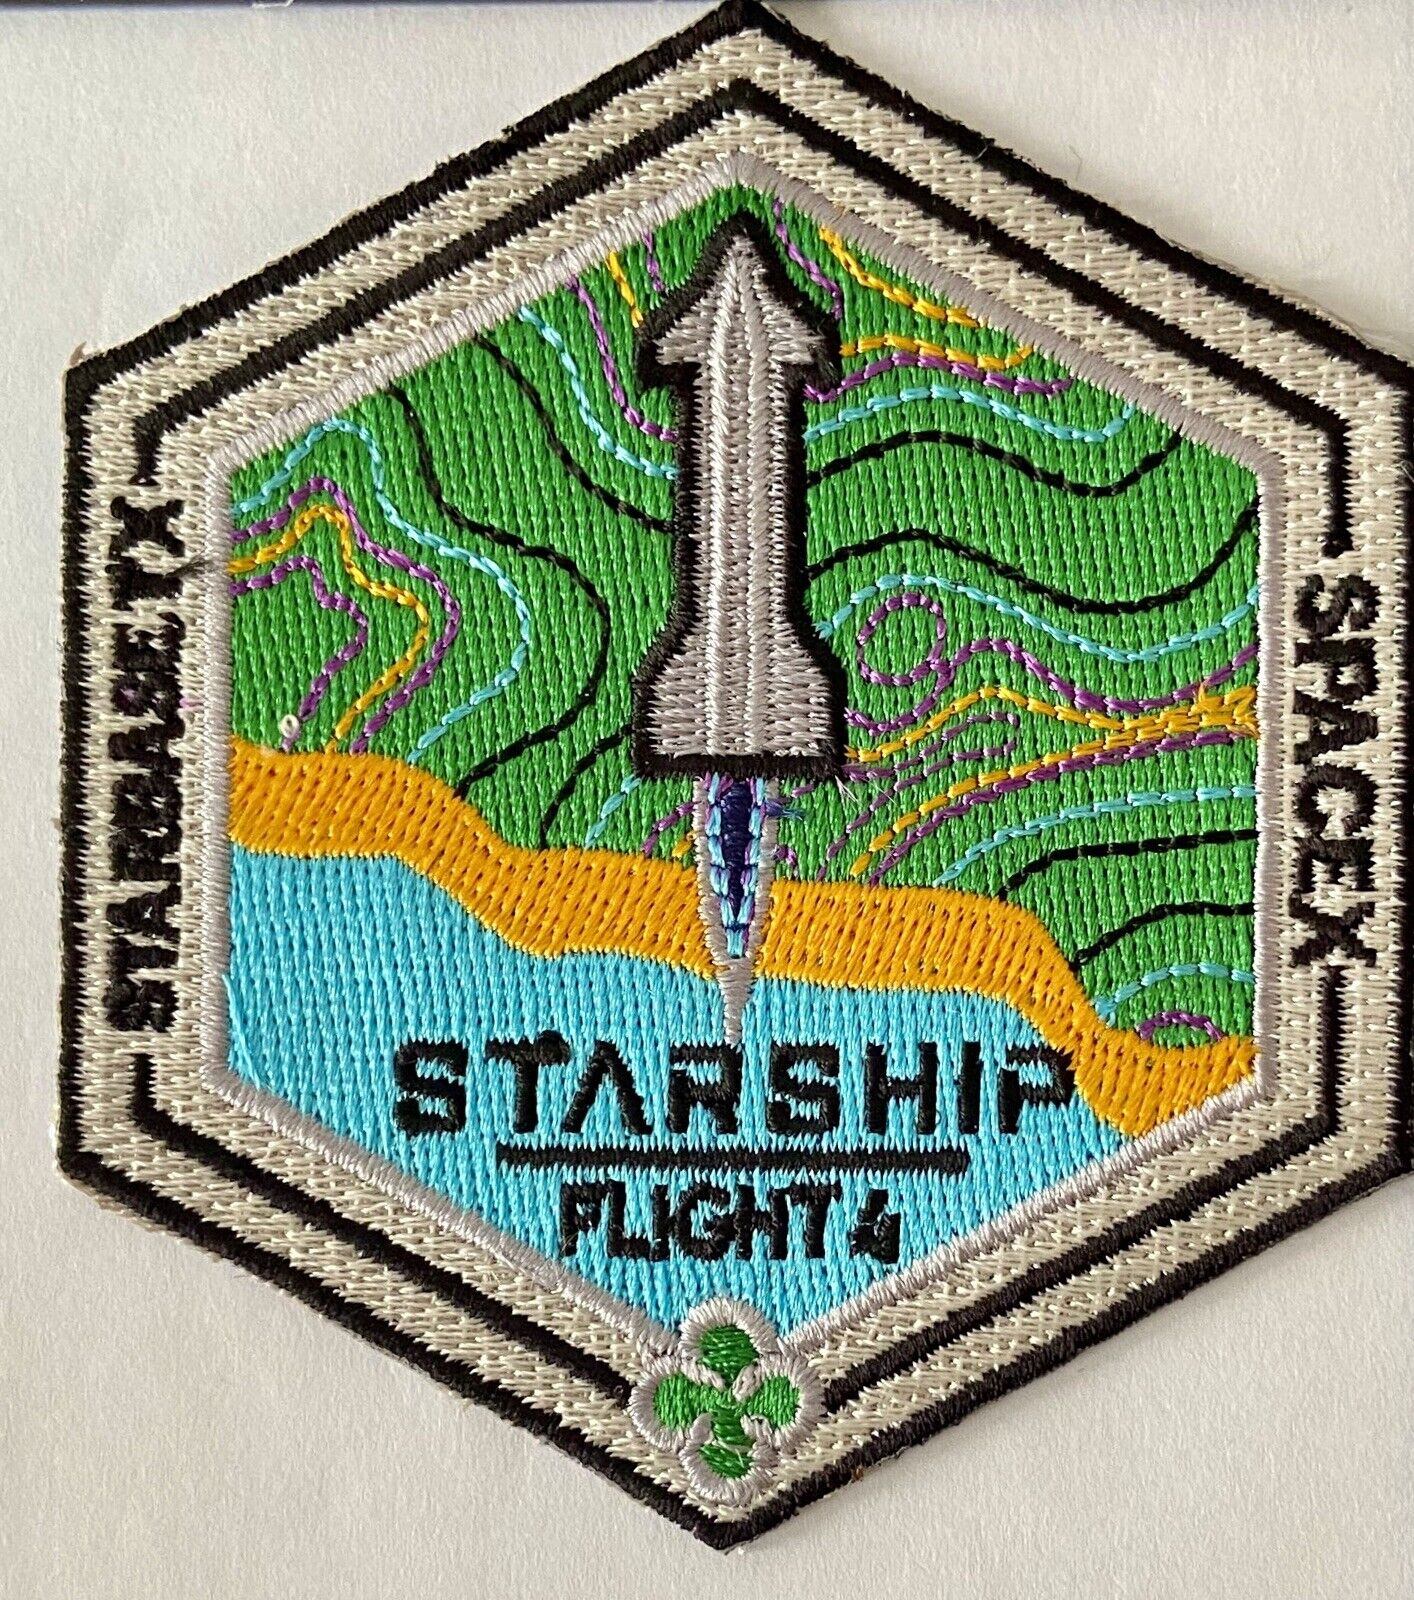 SPACE X STARSHIP PROGRAM FLIGHT 4 MISSION PATCH 3” USA